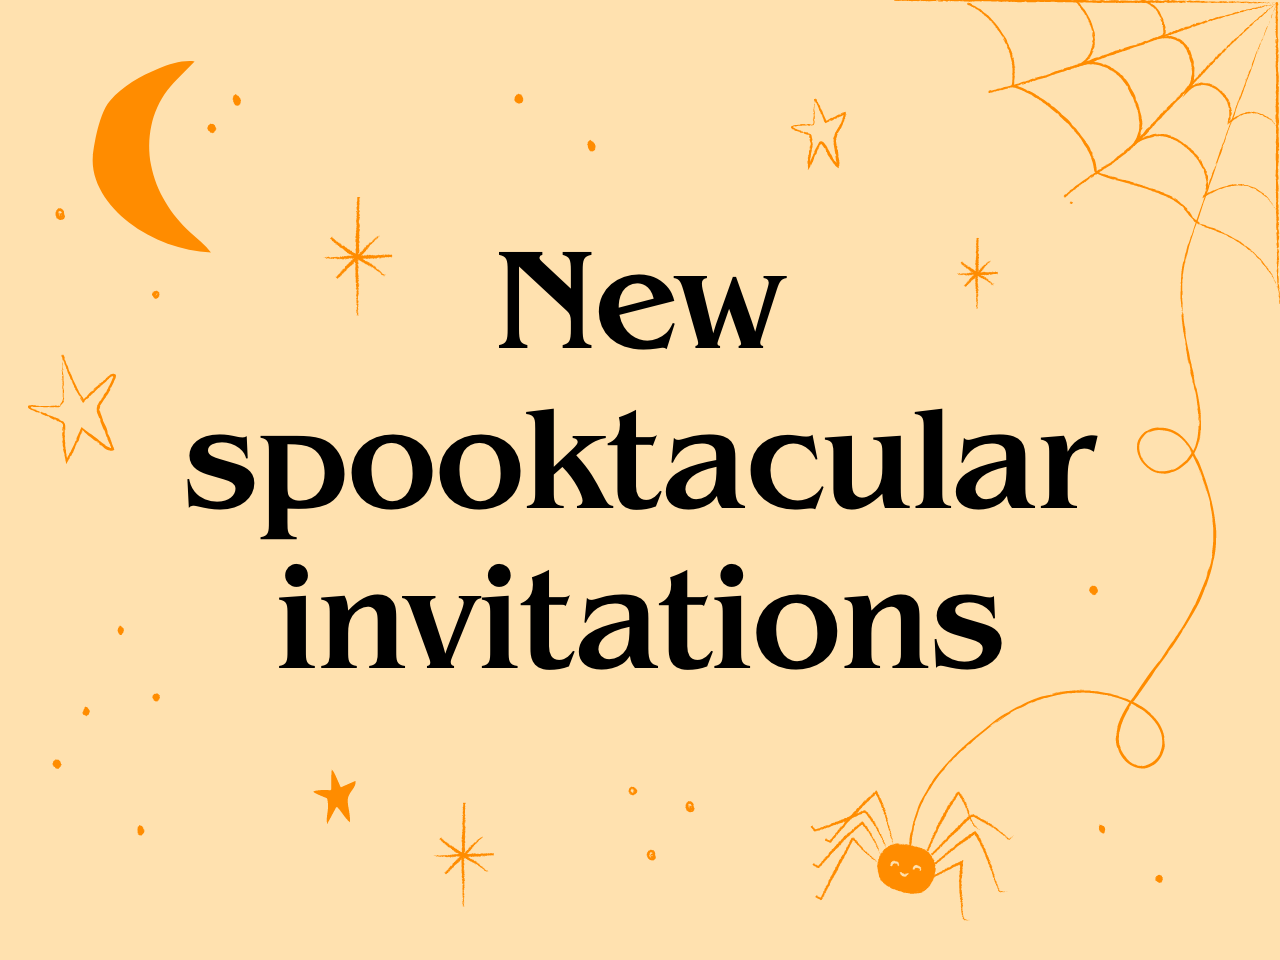 New spooktacular invitations